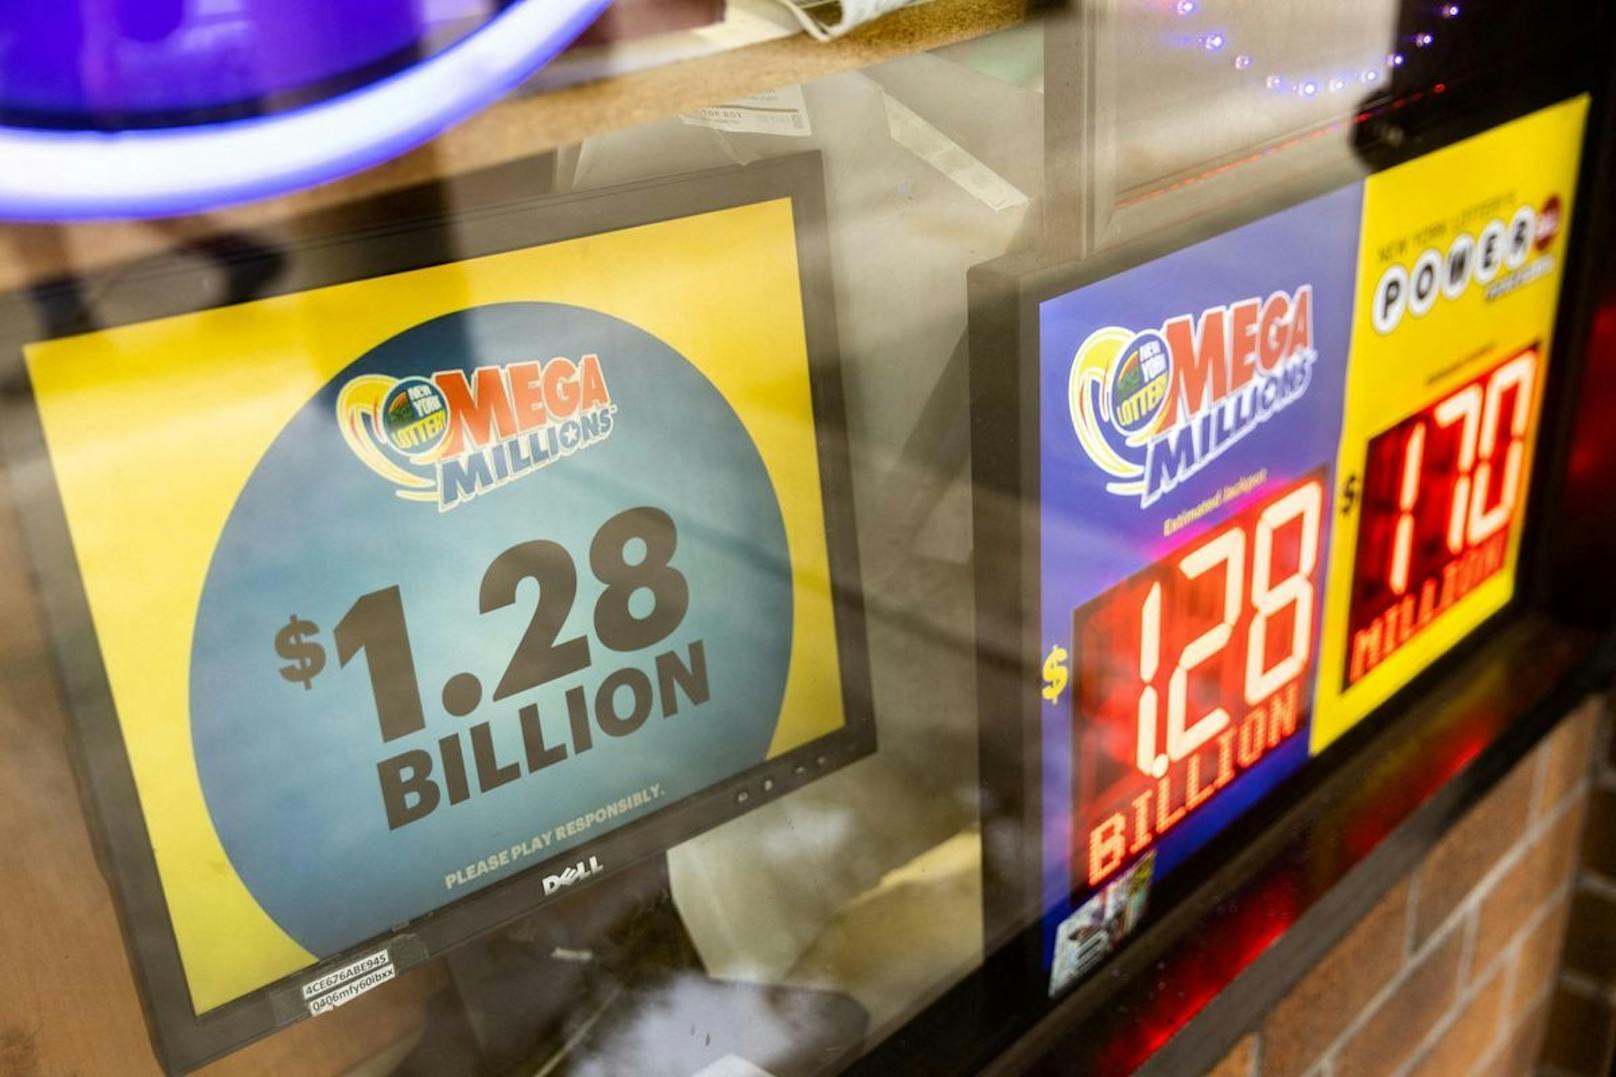 1,26 Milliarden Euro – Lottospieler knackt Mega-Jackpot